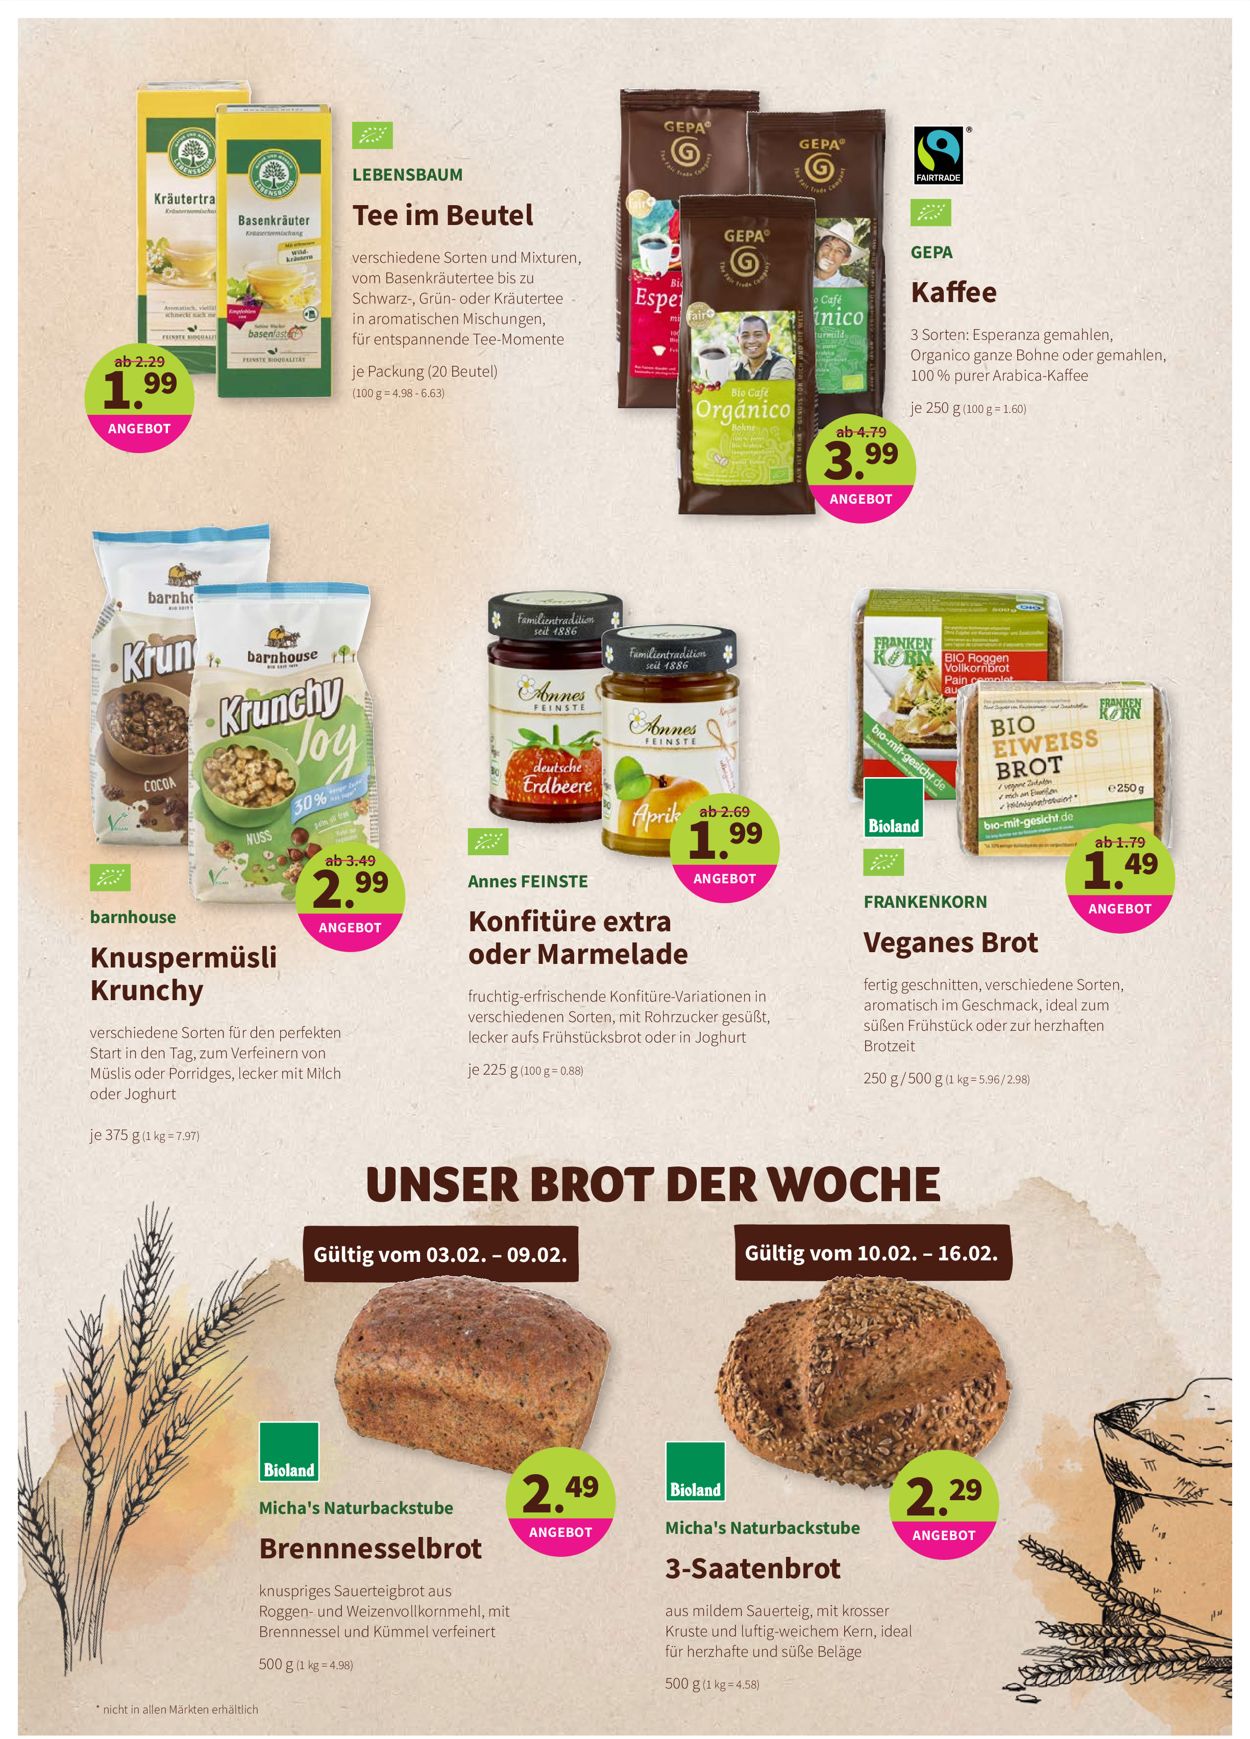 Denn's Biomarkt Prospekt - Aktuell vom 03.02-16.02.2021 (Seite 8)